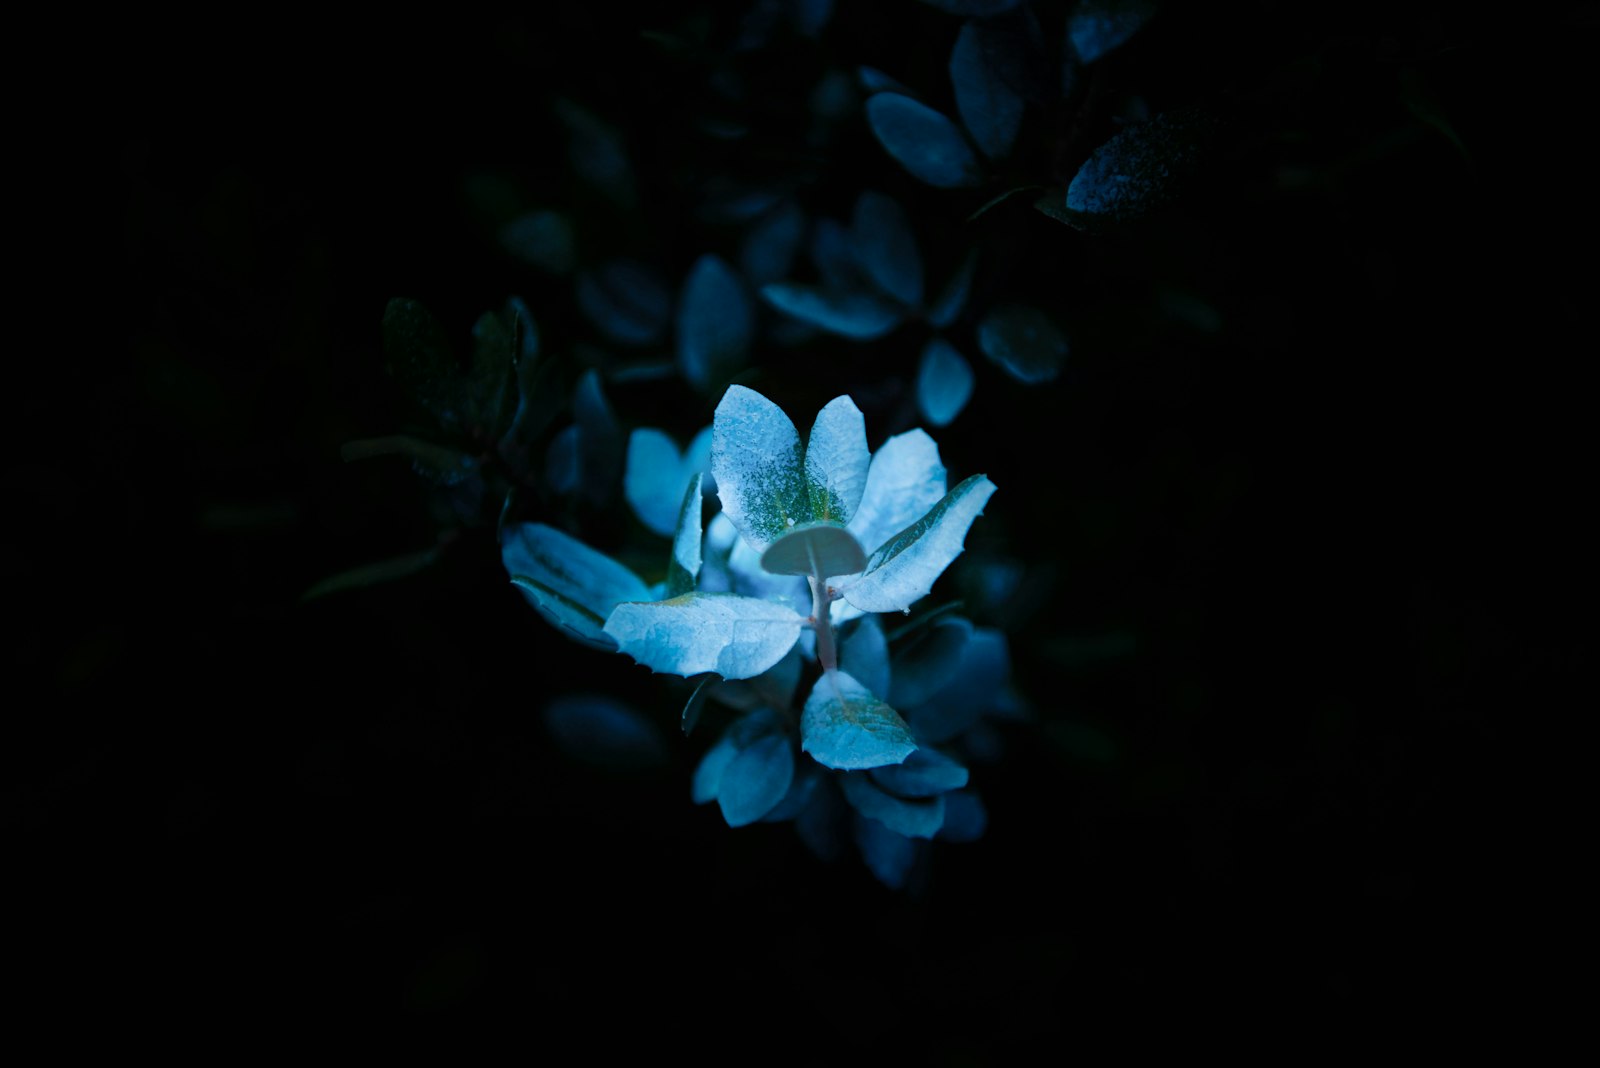 Nikon AF-S Nikkor 24-70mm F2.8E ED VR sample photo. White petal flower photography